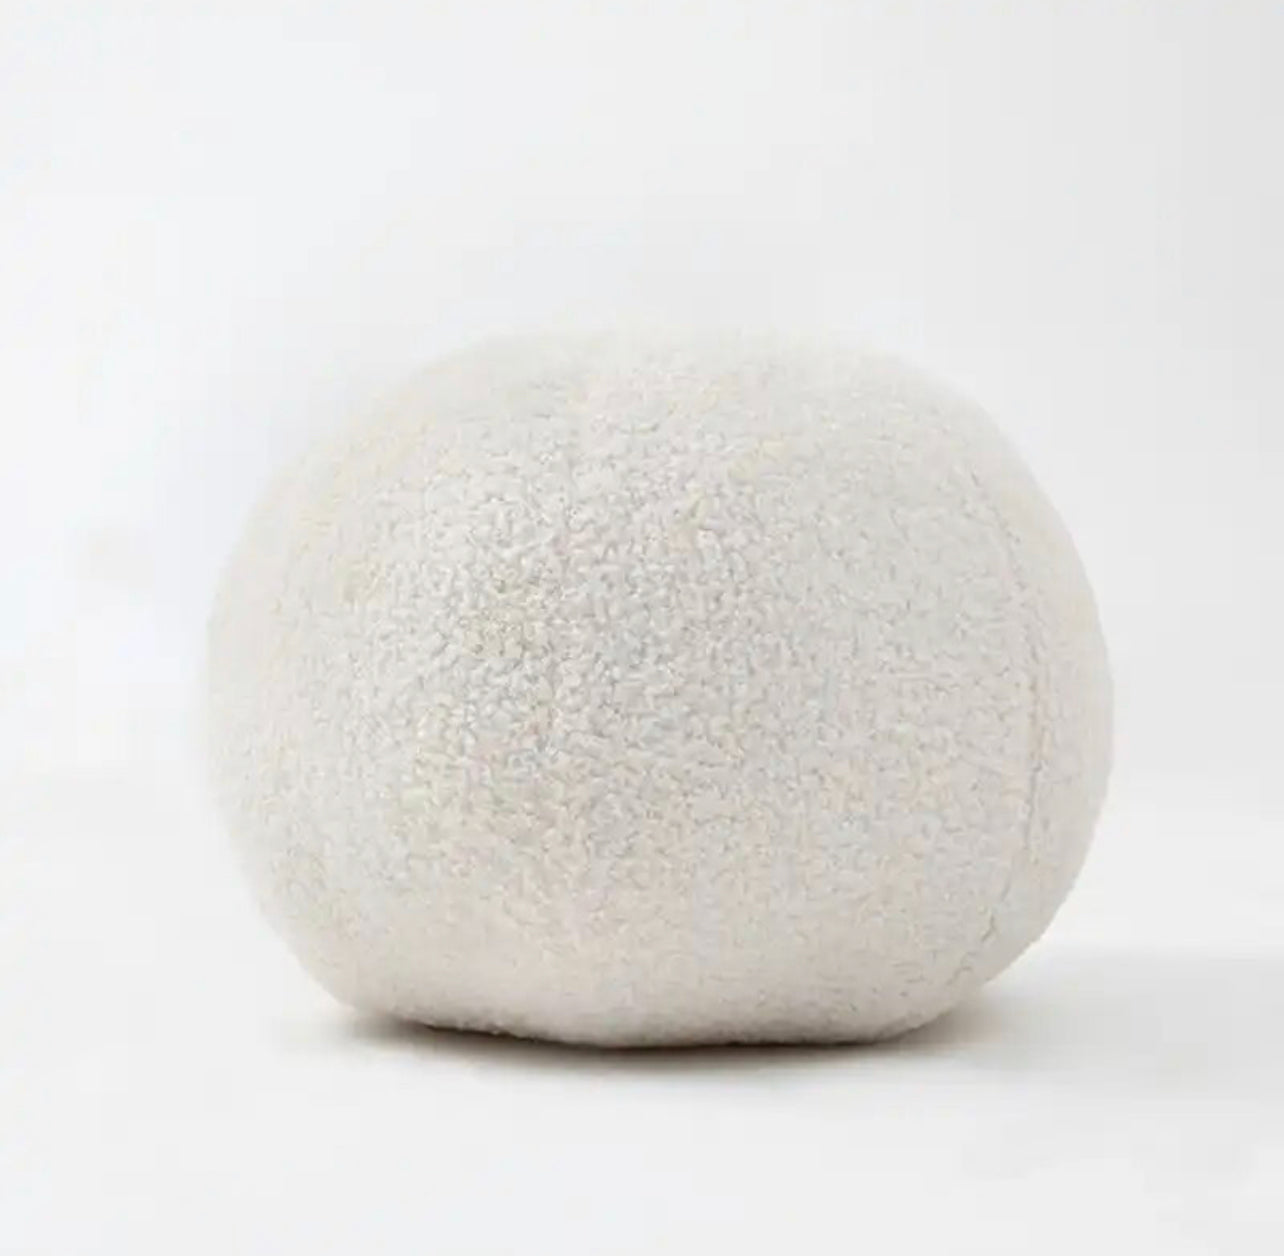 The Ball White Cushion